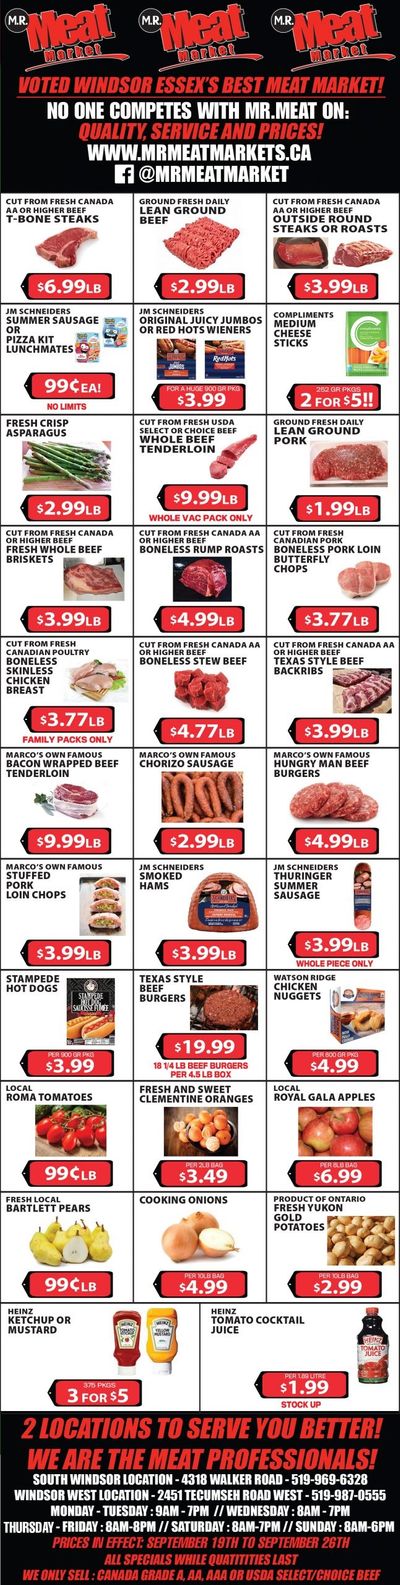 M.R. Meat Market Flyer September 19 to 26